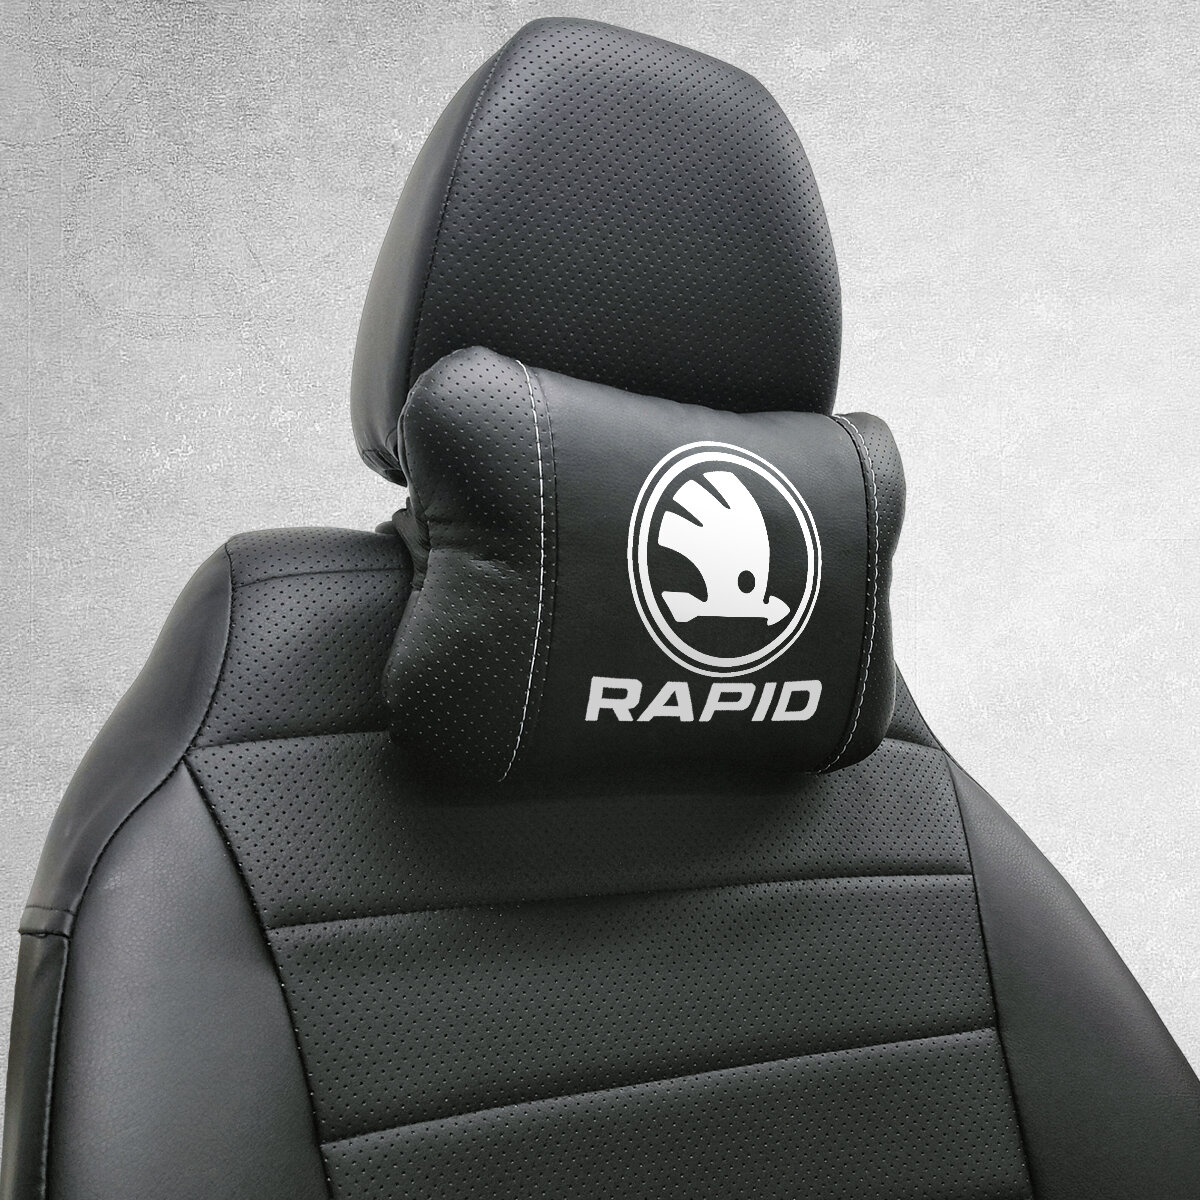 Автомобильная подушка под шею на подголовник эмблема Skoda Rapid для Шкода Рапид. Подушка для шеи в машину. Подушка на сиденье автомобиля.